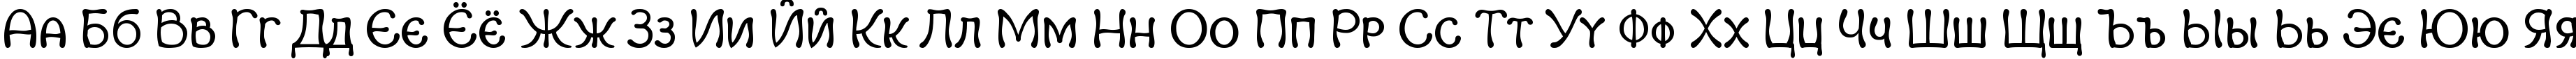 Пример написания русского алфавита шрифтом Margot Small Capitals